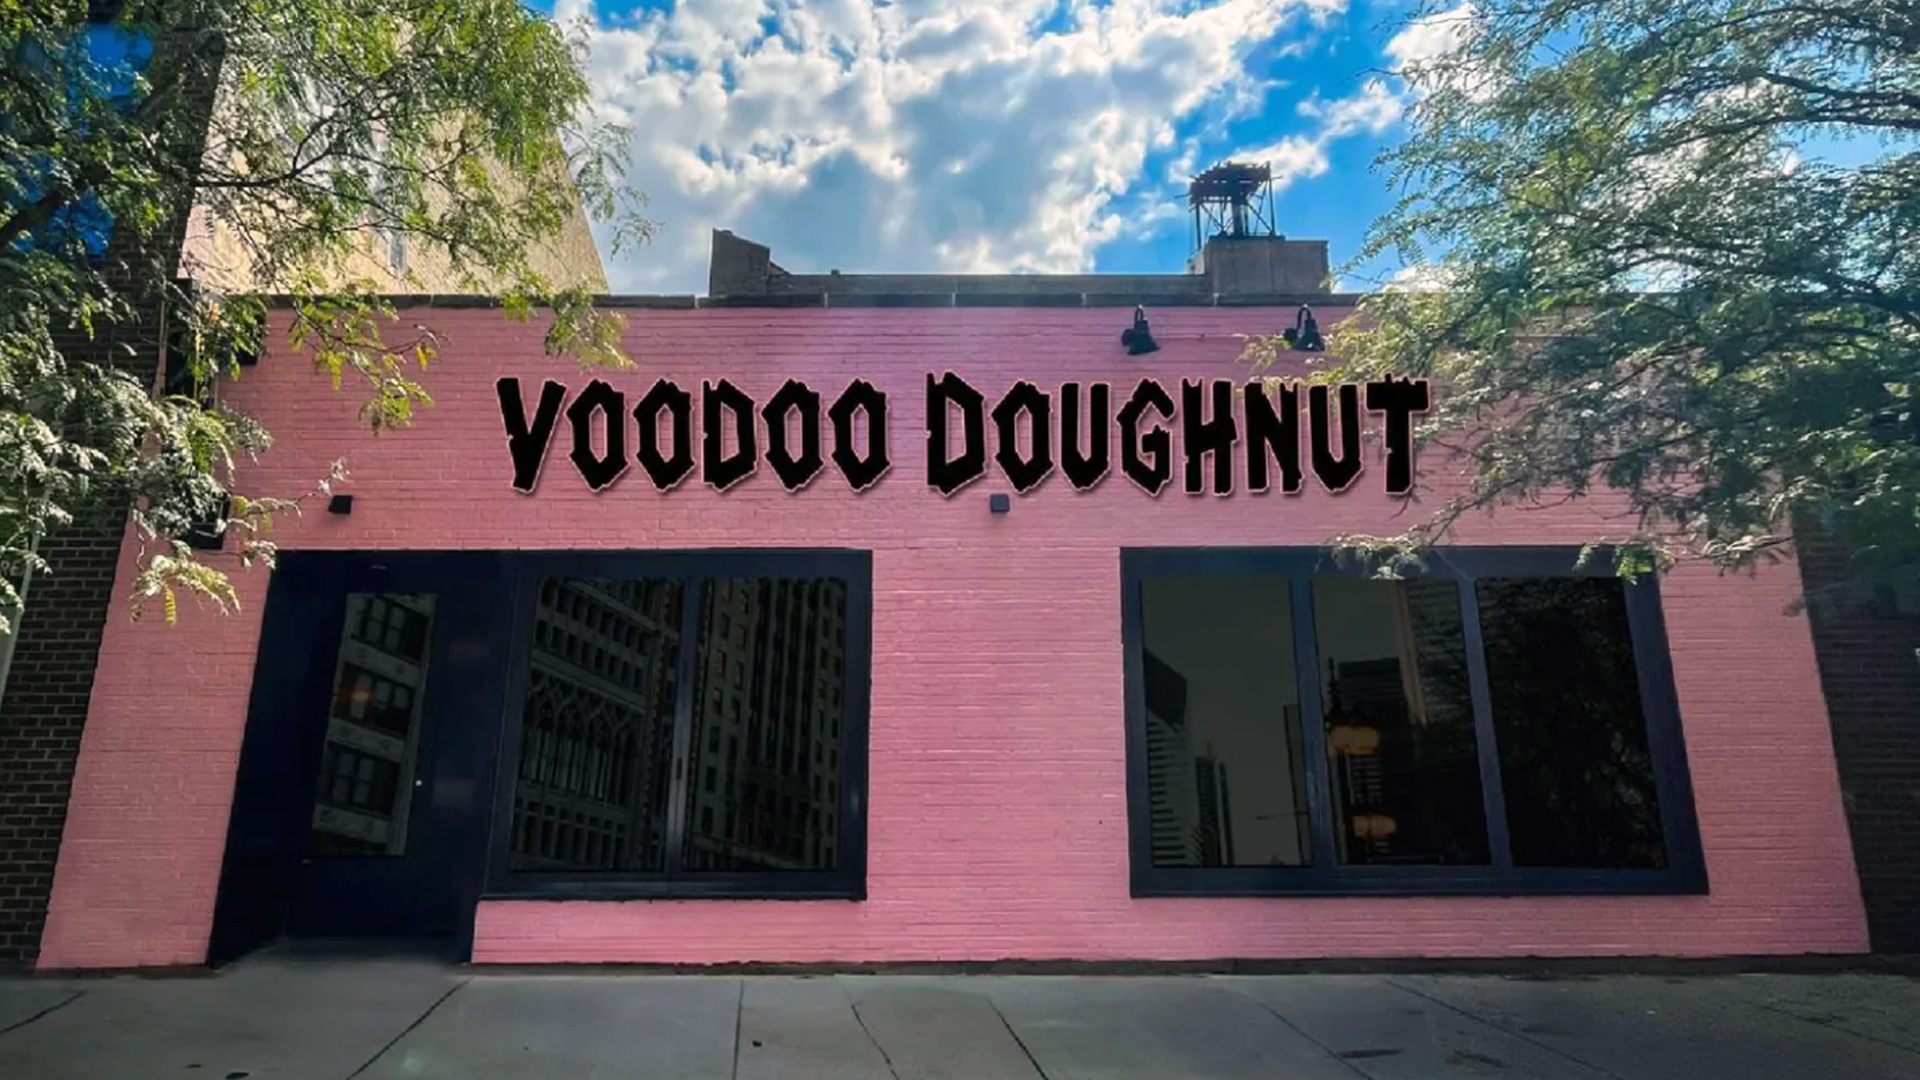 Voodoo Doughnut storefront in Chicago